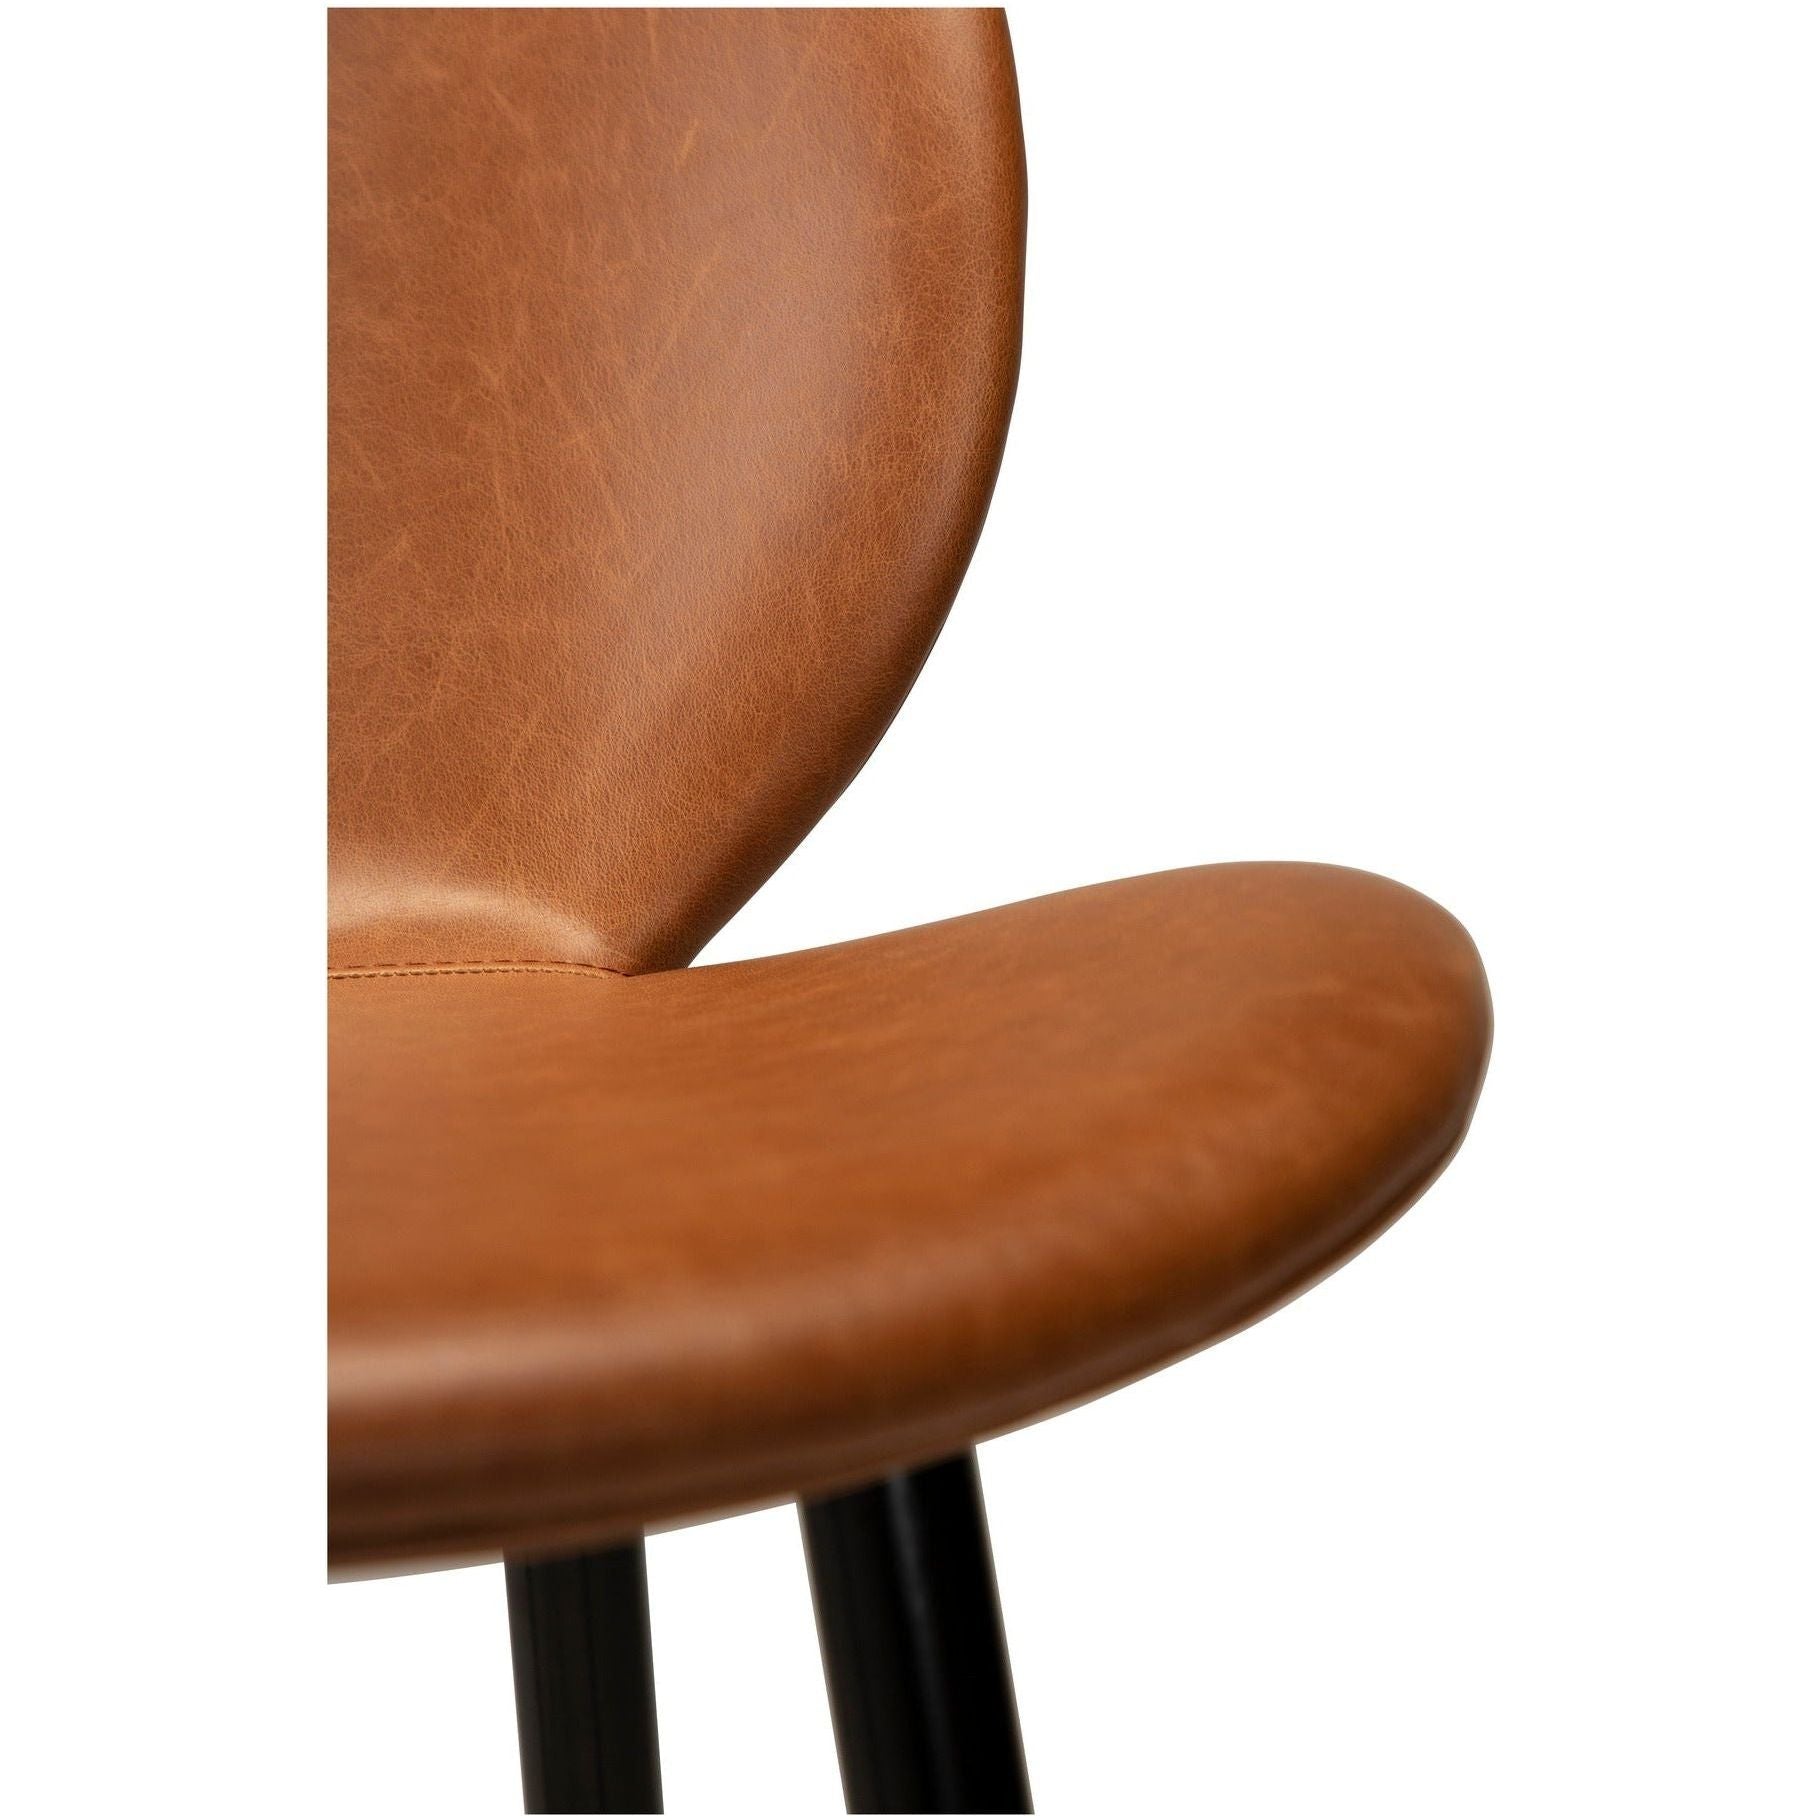 CLOUD baro kėdė, ruda spalva